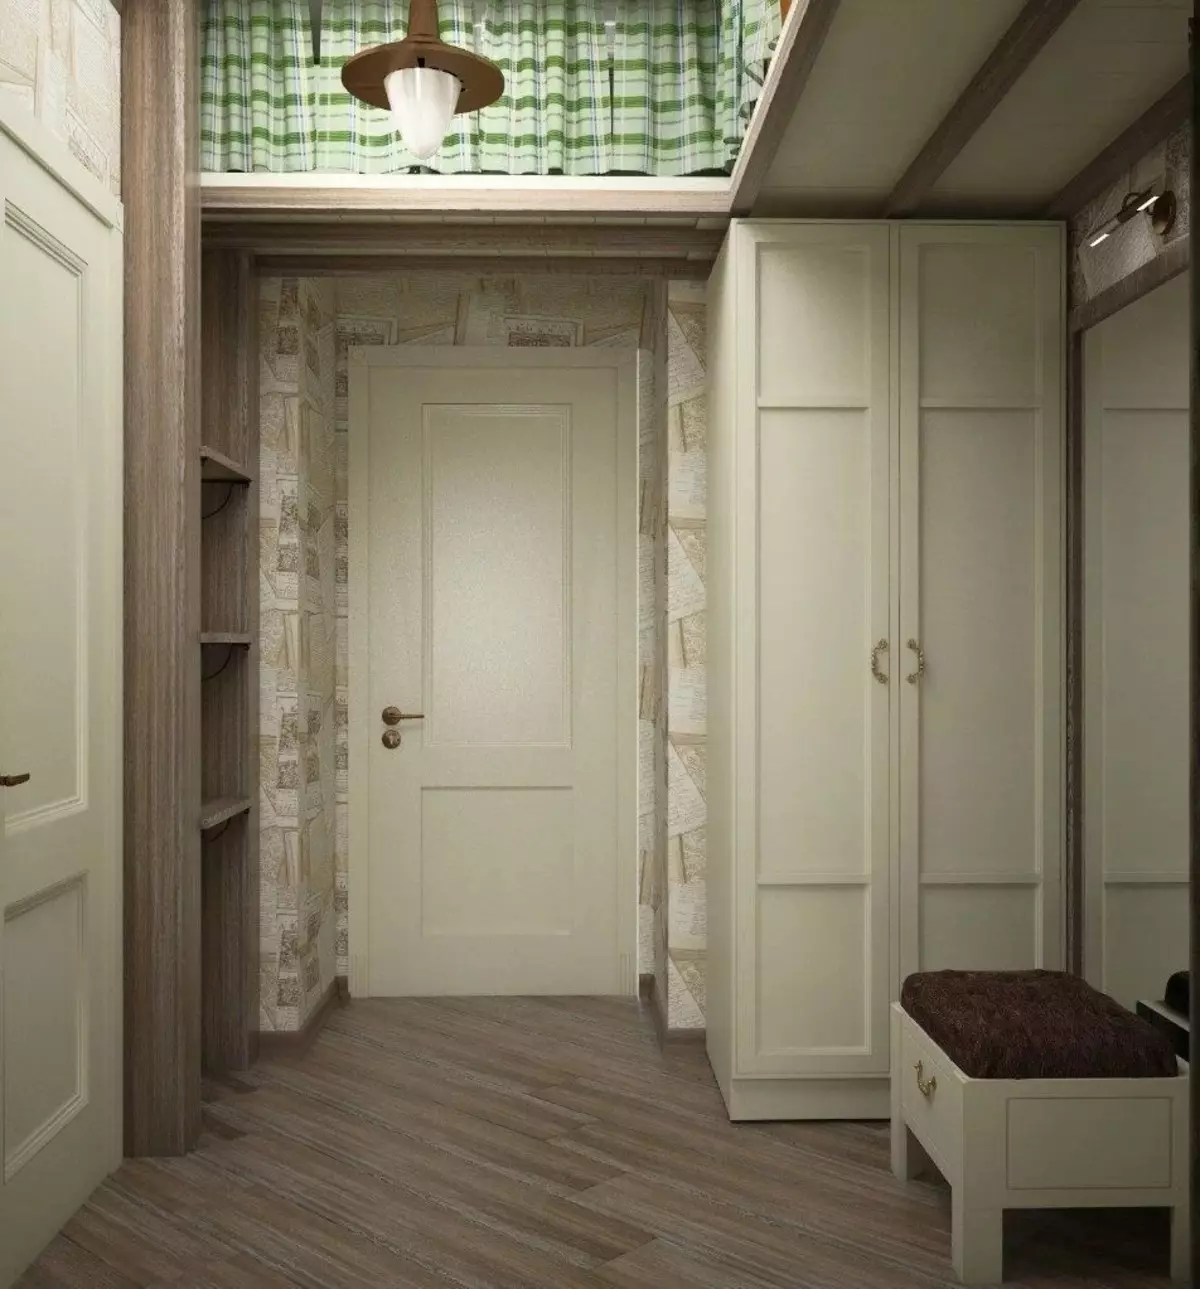 Σχεδιασμός του Ιστιού 4 τετραγωνικών μέτρων. M (42 φωτογραφίες): Χαρακτηριστικά του εσωτερικού σχεδιασμού του διαδρόμου 4 μέτρα μήκος στο διαμέρισμα και τις όμορφες λύσεις 9263_29